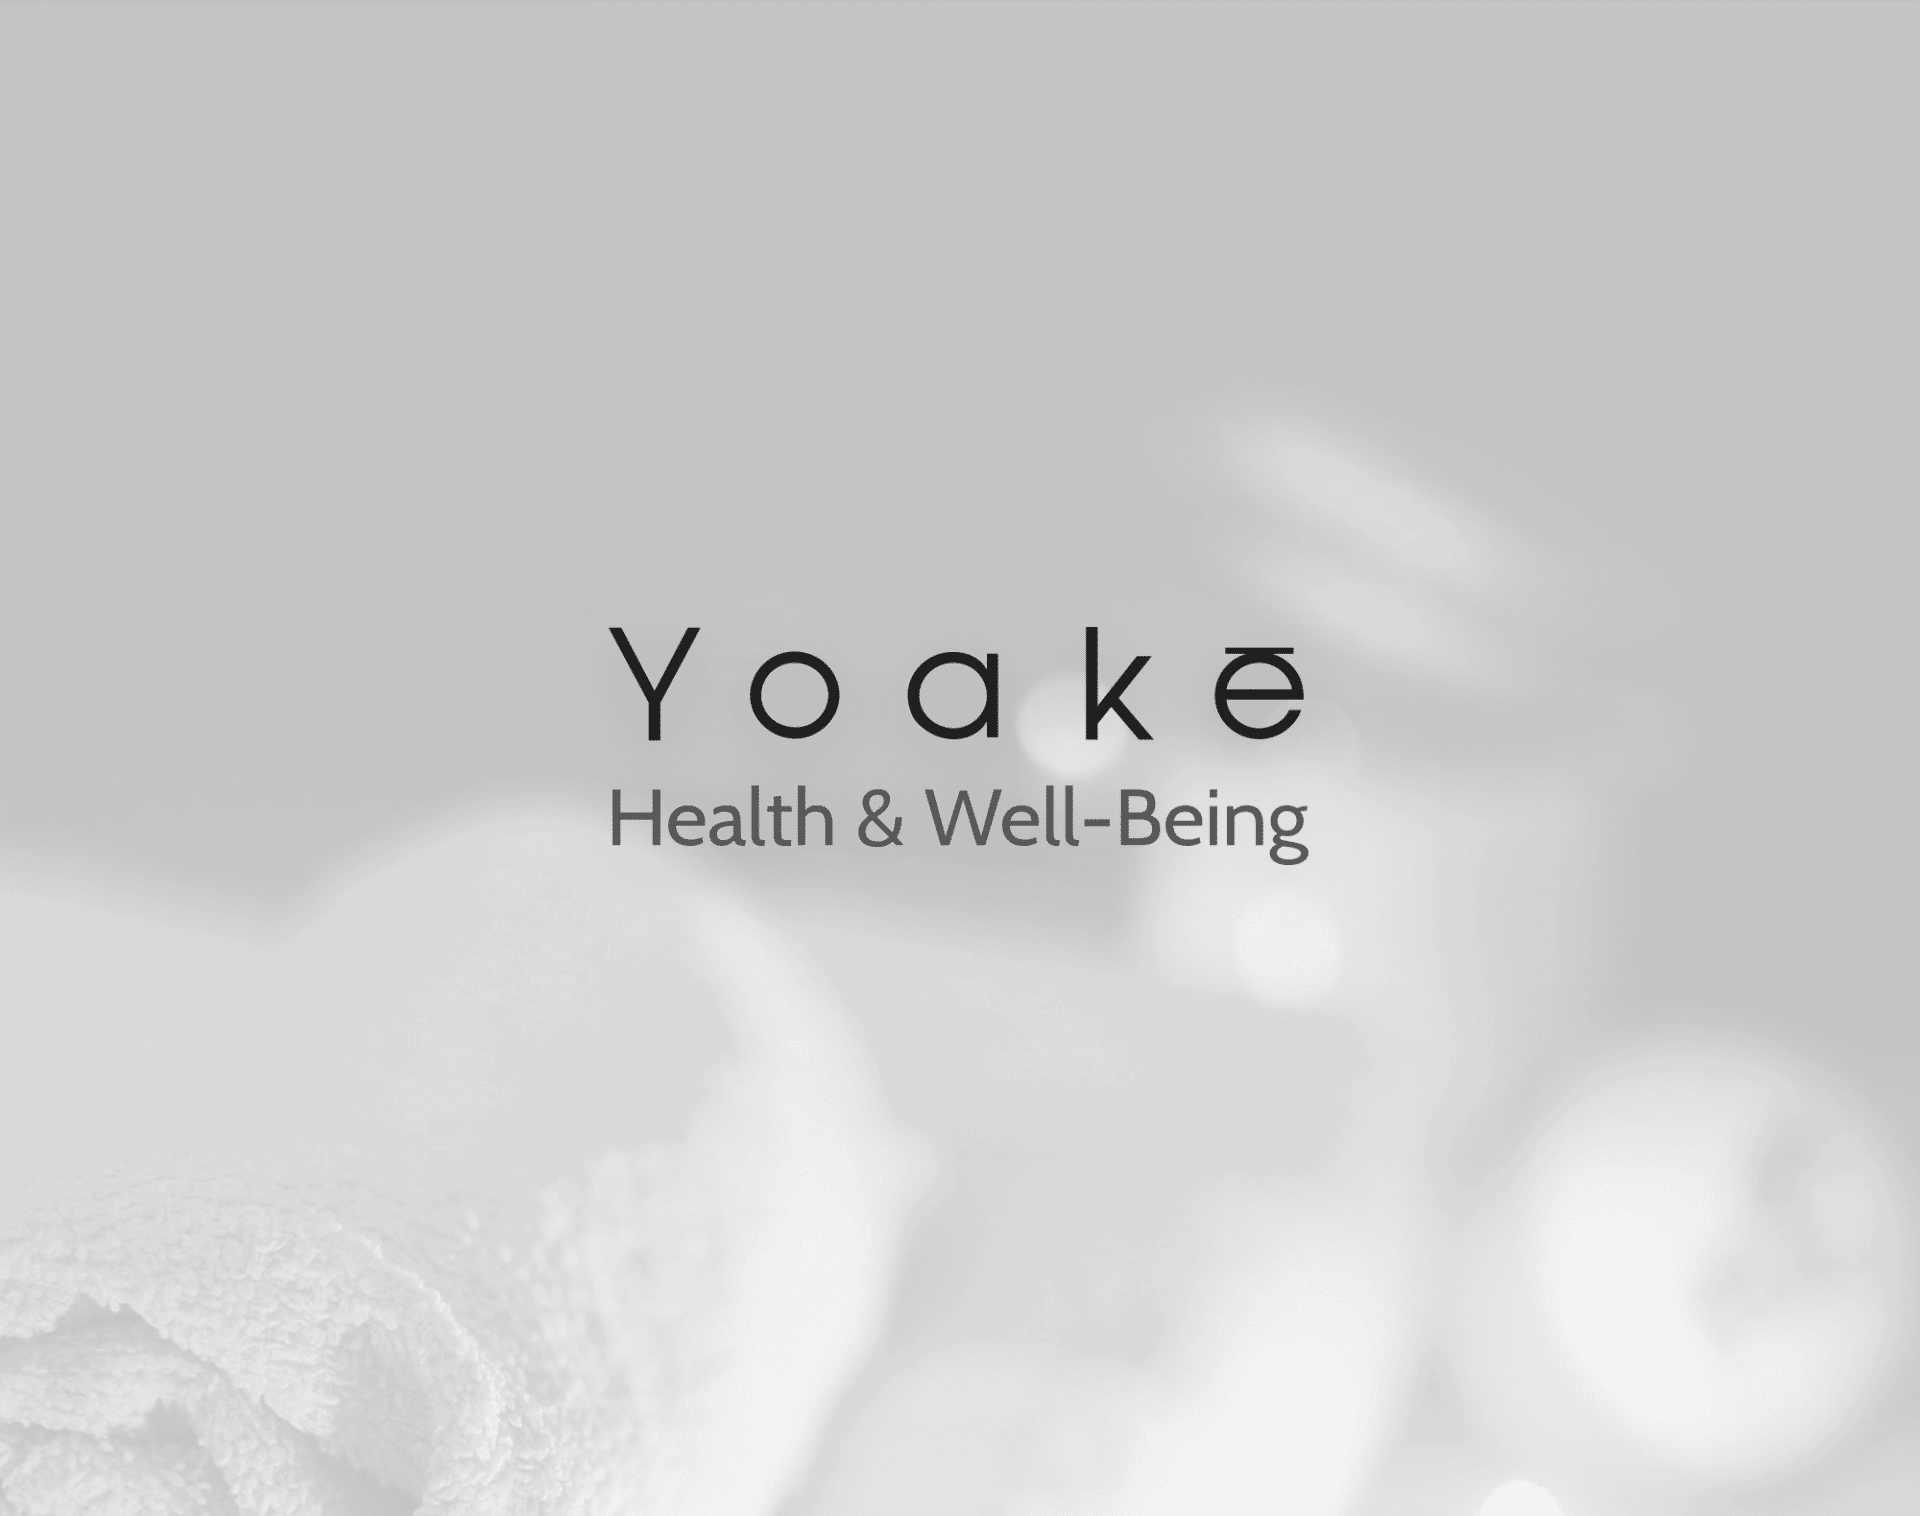 Yoake New Logo - Health & Well-Being